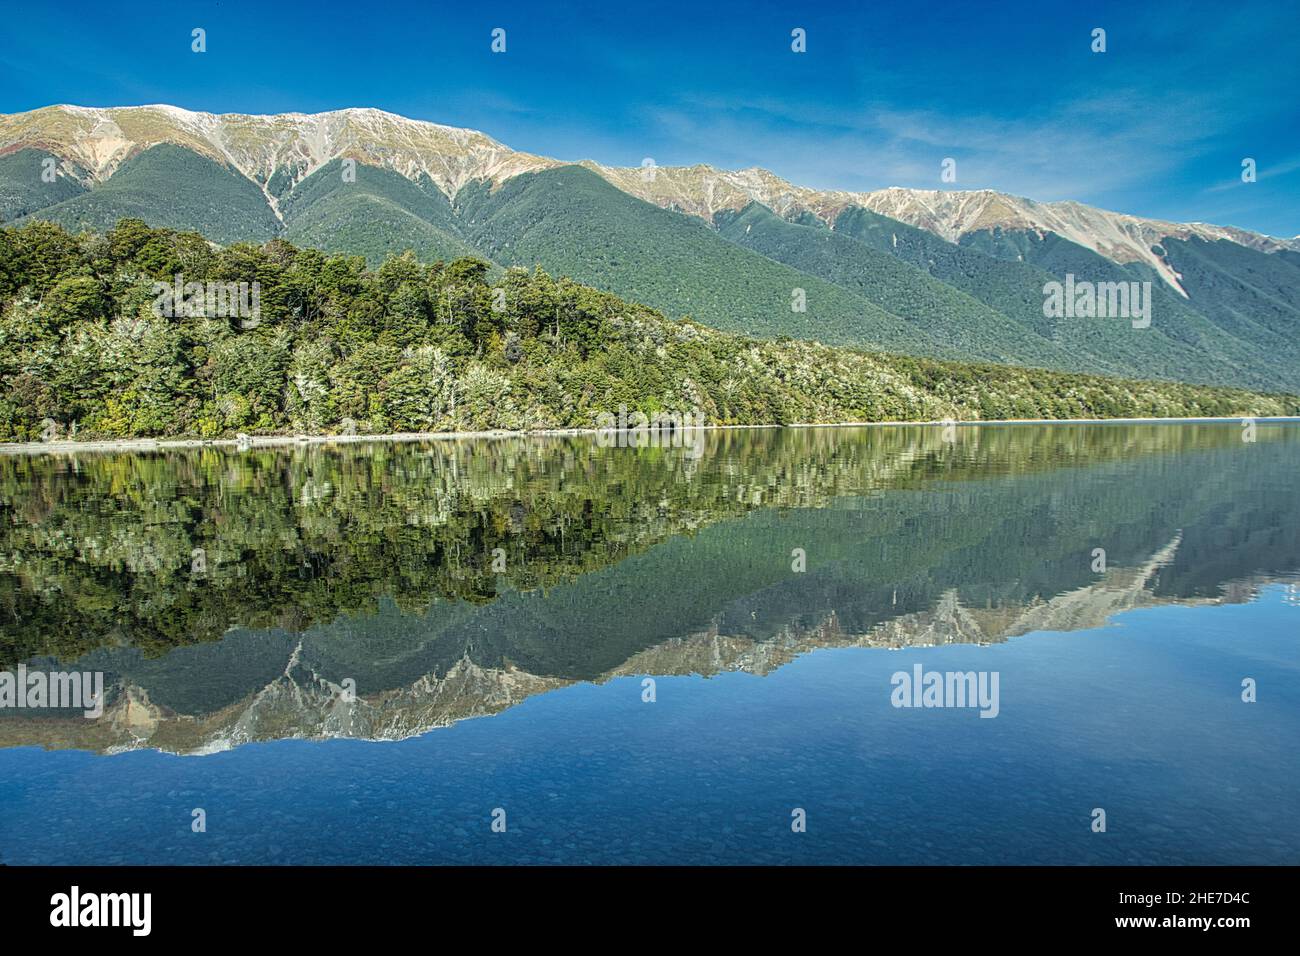 Vista panoramica del lago che riflette montagne coperte di foreste sotto il cielo nuvoloso Foto Stock